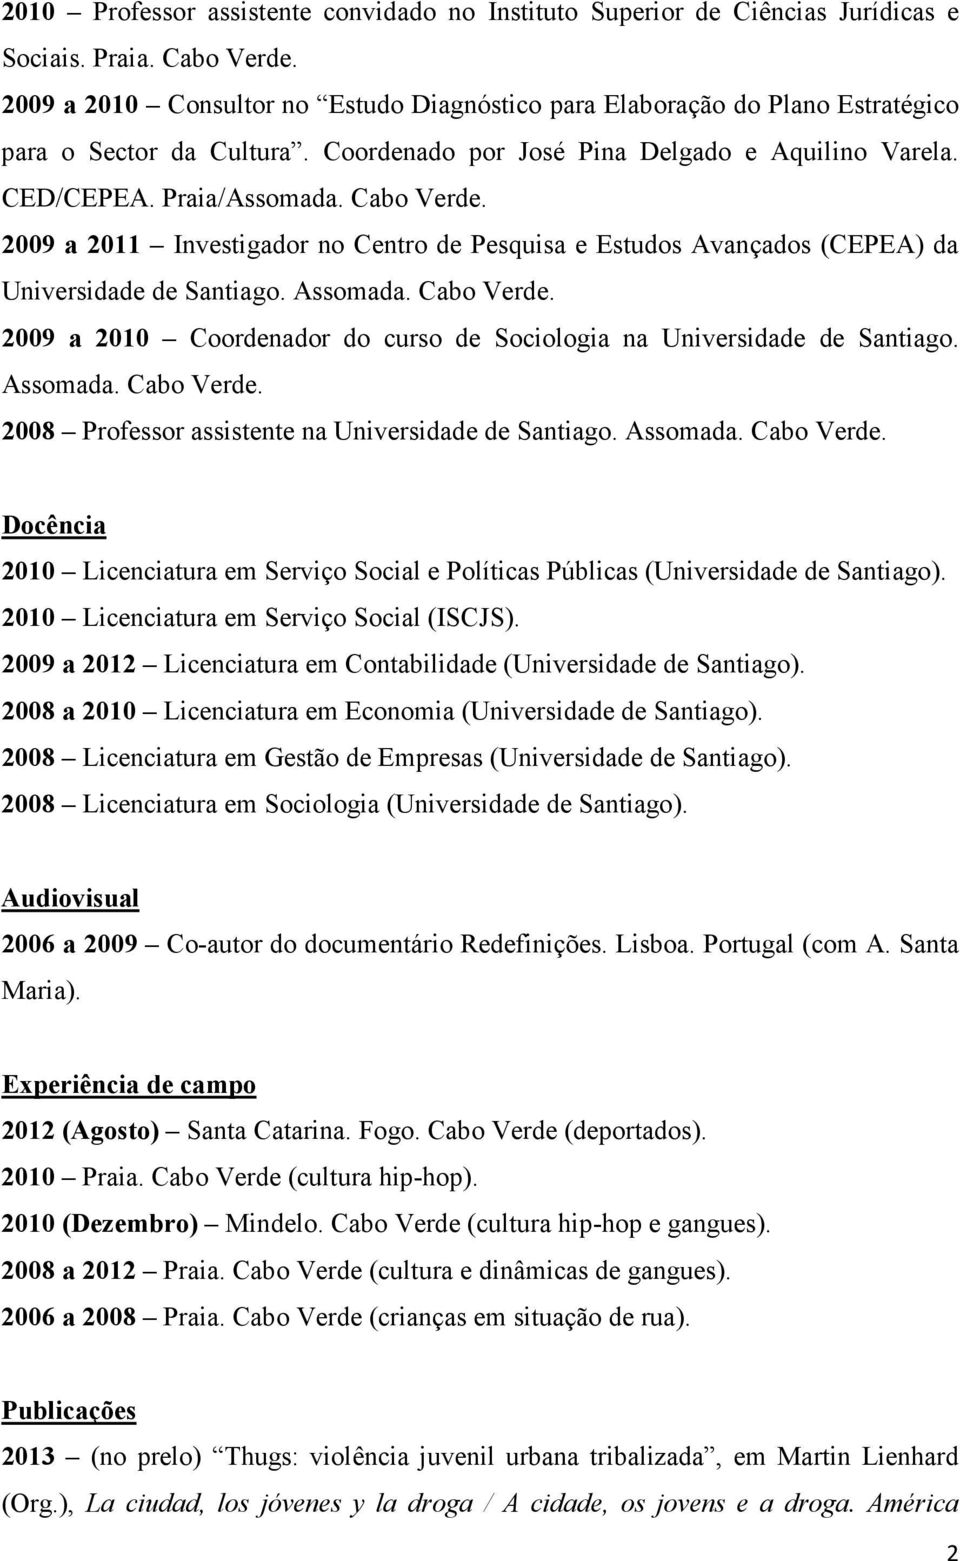 2009 a 2011 Investigador no Centro de Pesquisa e Estudos Avançados (CEPEA) da Universidade de Santiago. Assomada. Cabo Verde.